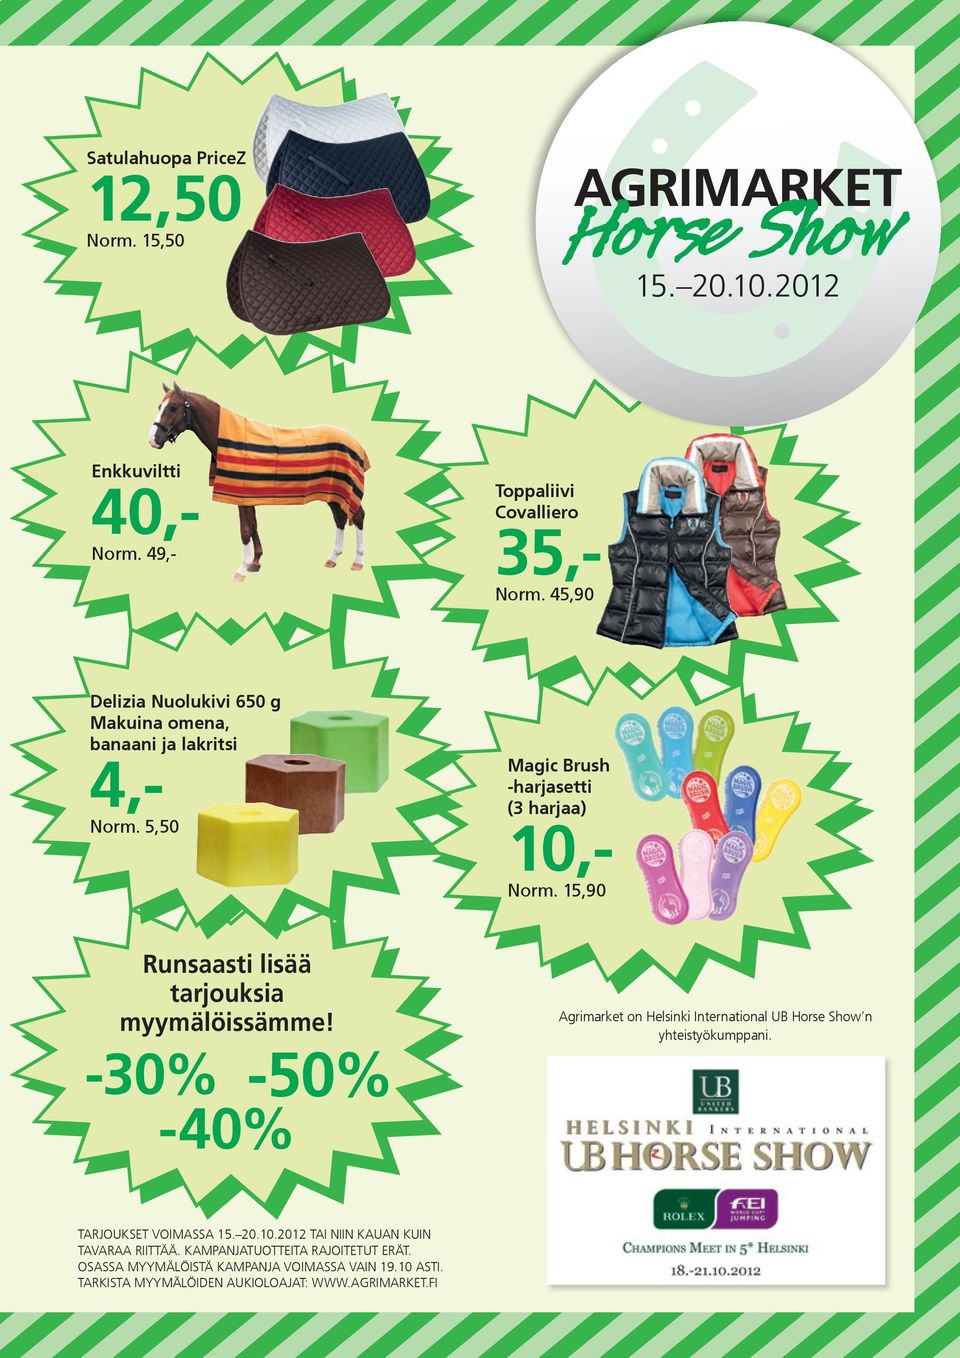 15,90 Runsaasti lisää tarjouksia myymälöissämme! -50% -30% -40% Agrimarket on Helsinki International UB Horse Show n yhteistyökumppani. TARJOUKSET VOIMASSA 15.